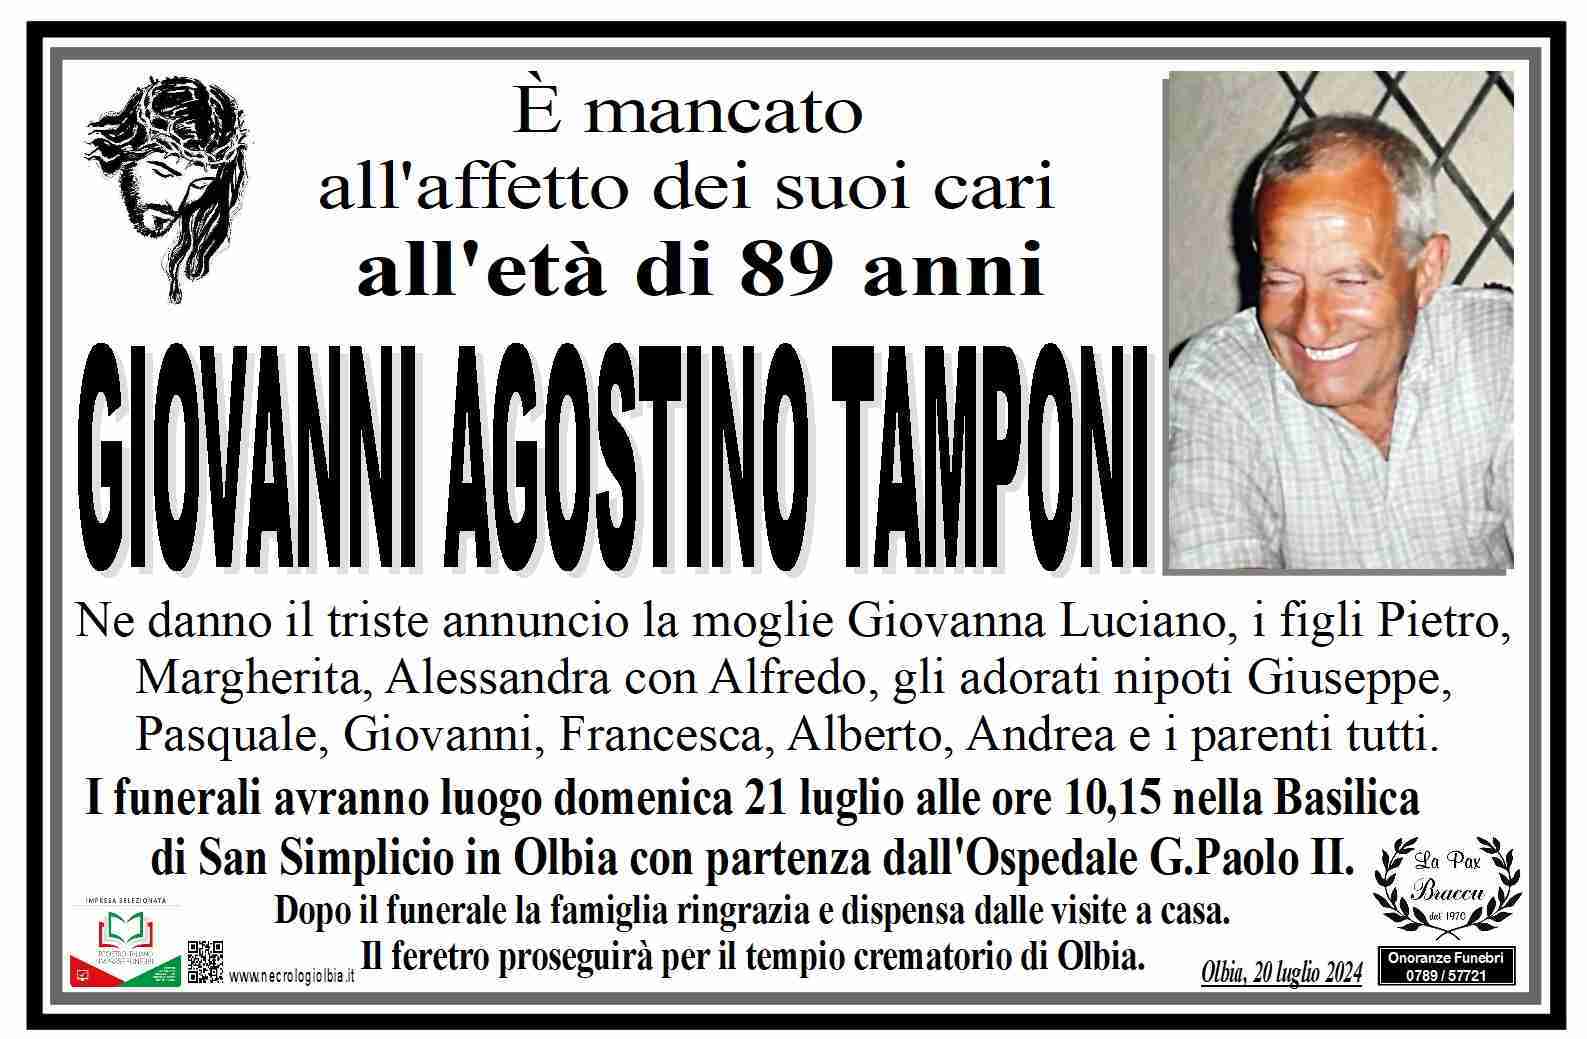 Giovanni Agostino Tamponi